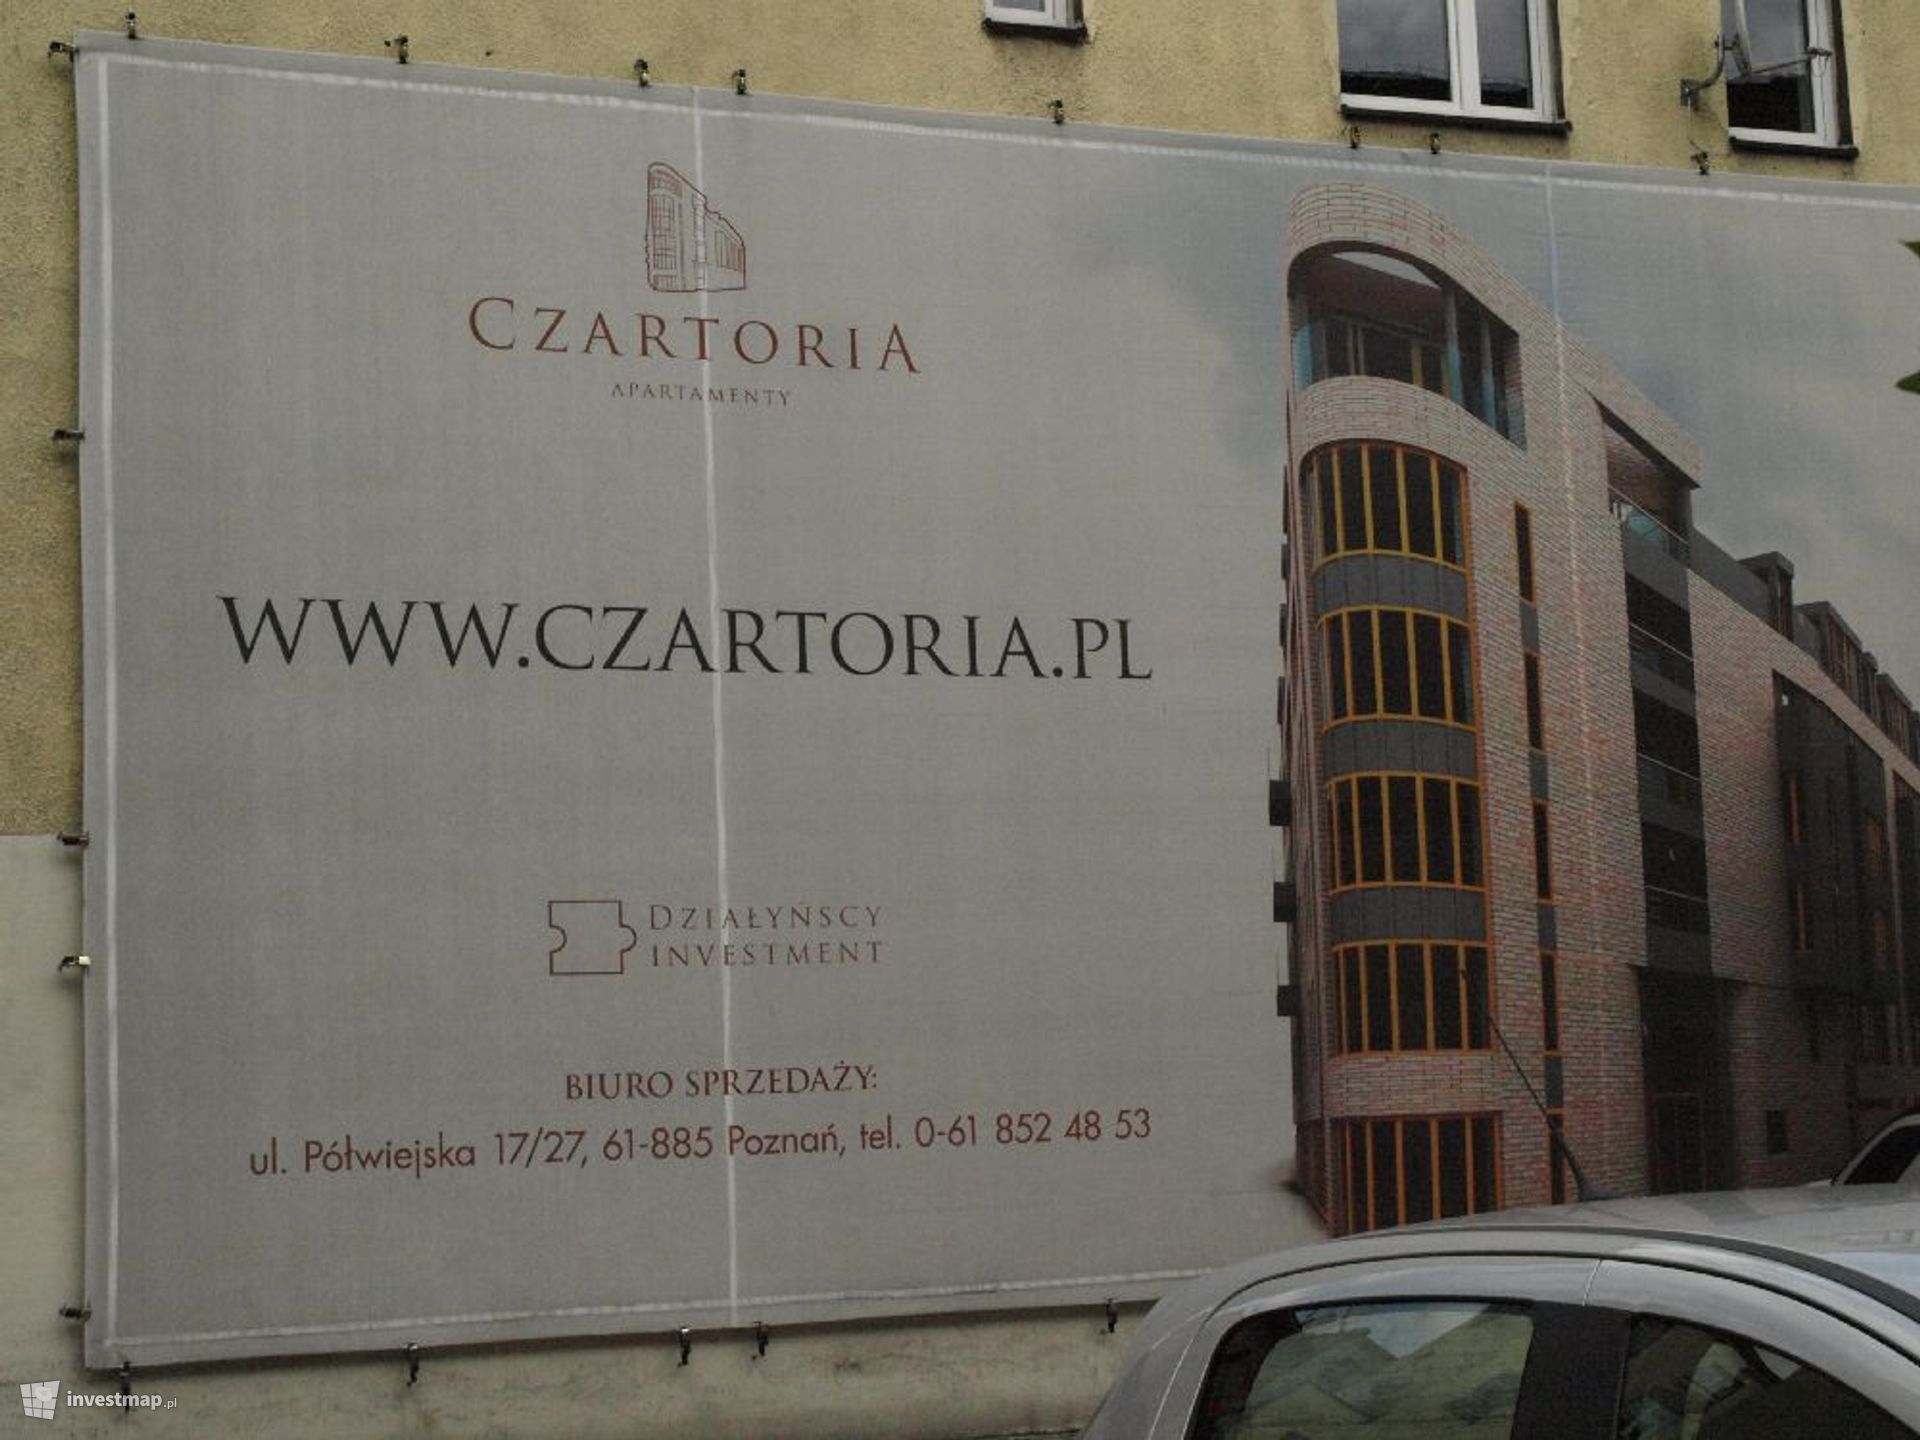 [Poznań] Apartamenty Czartoria